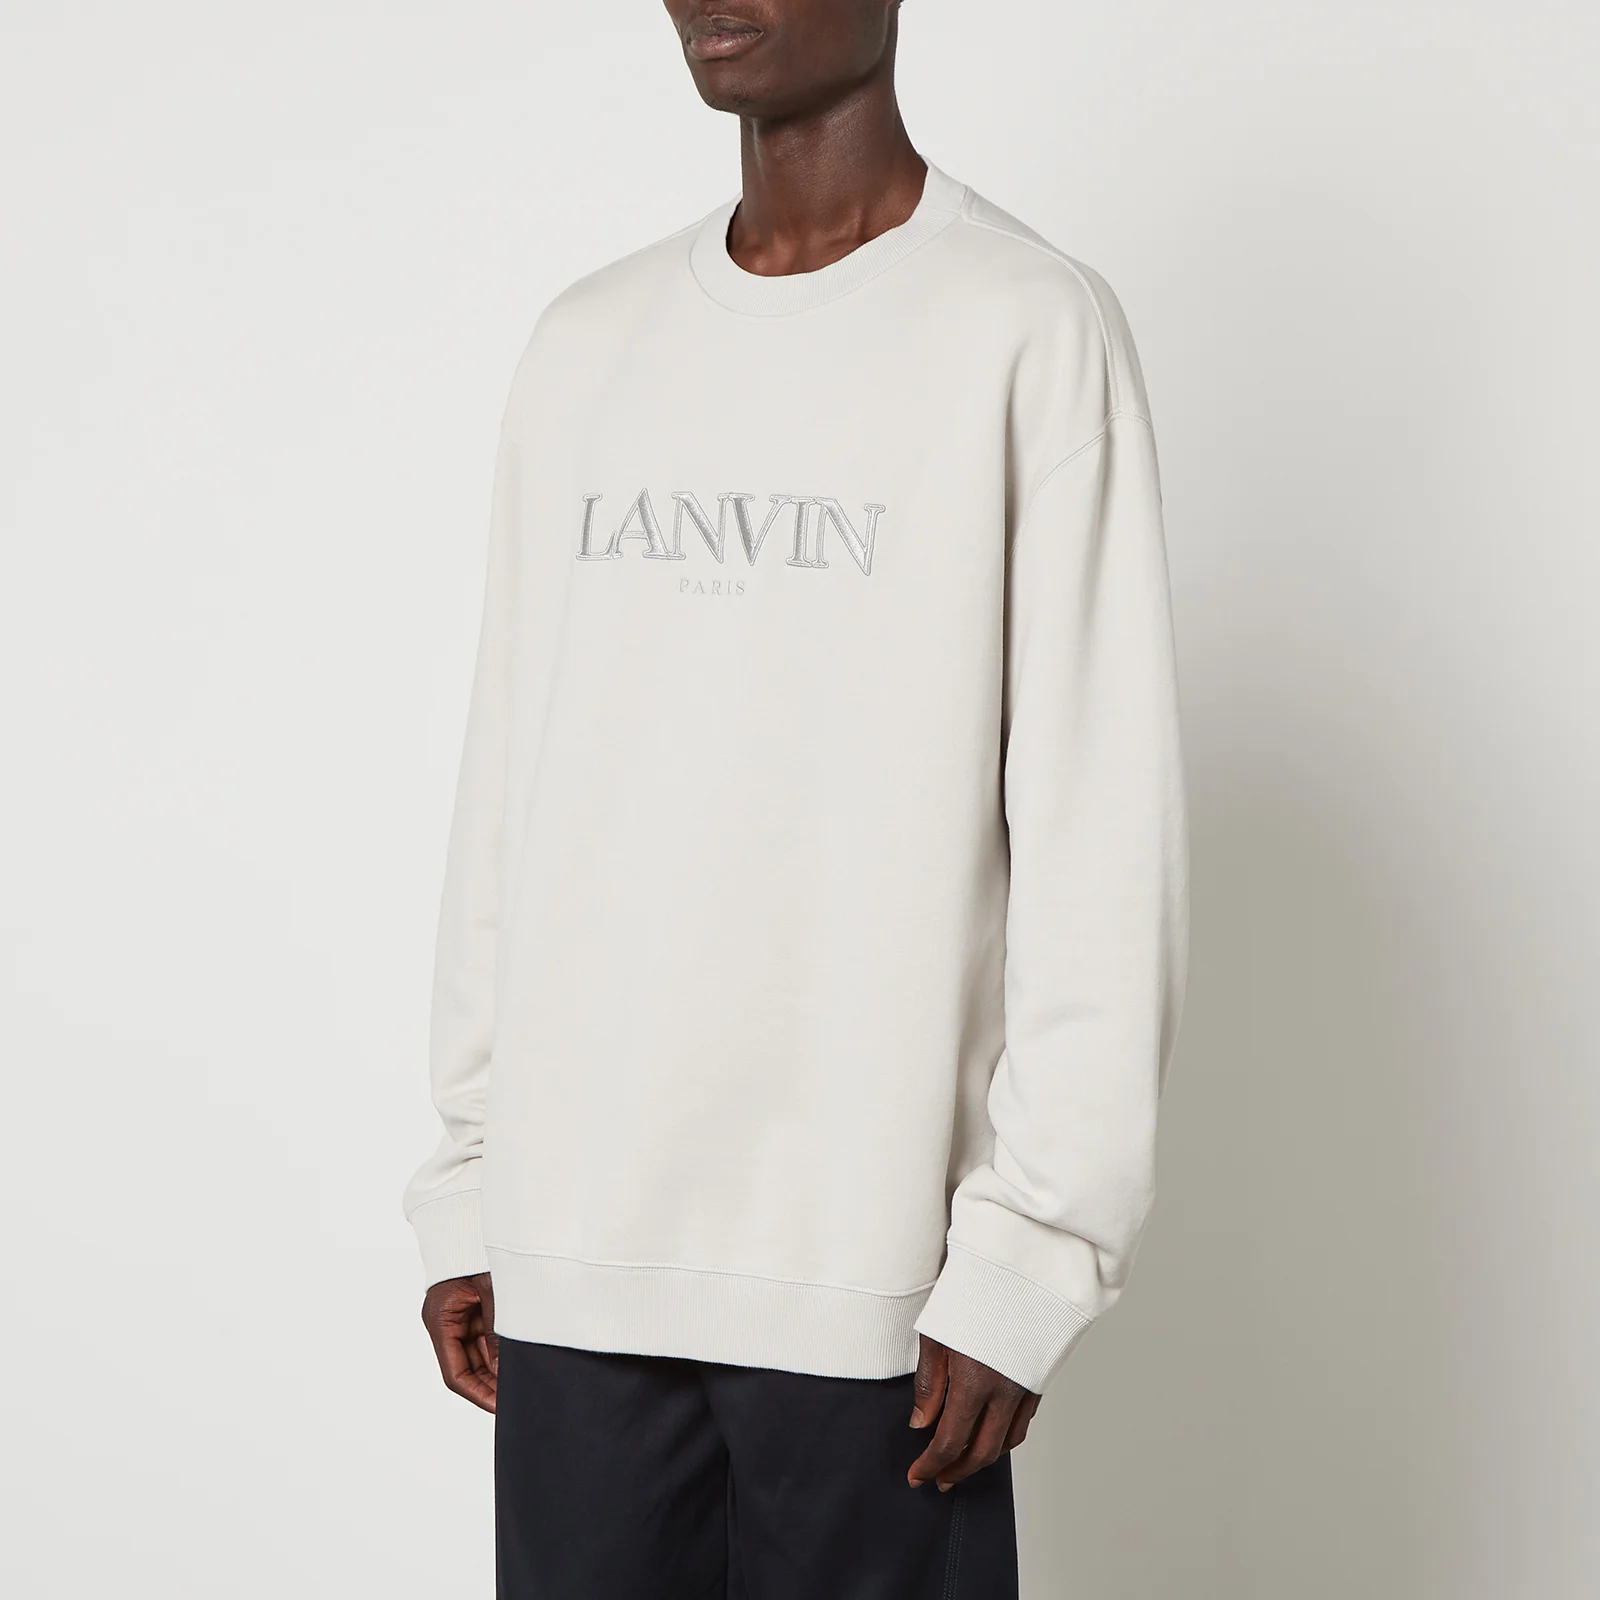 Lanvin Classic Lanvin Paris Embroidered Cotton Sweatshirt Image 1